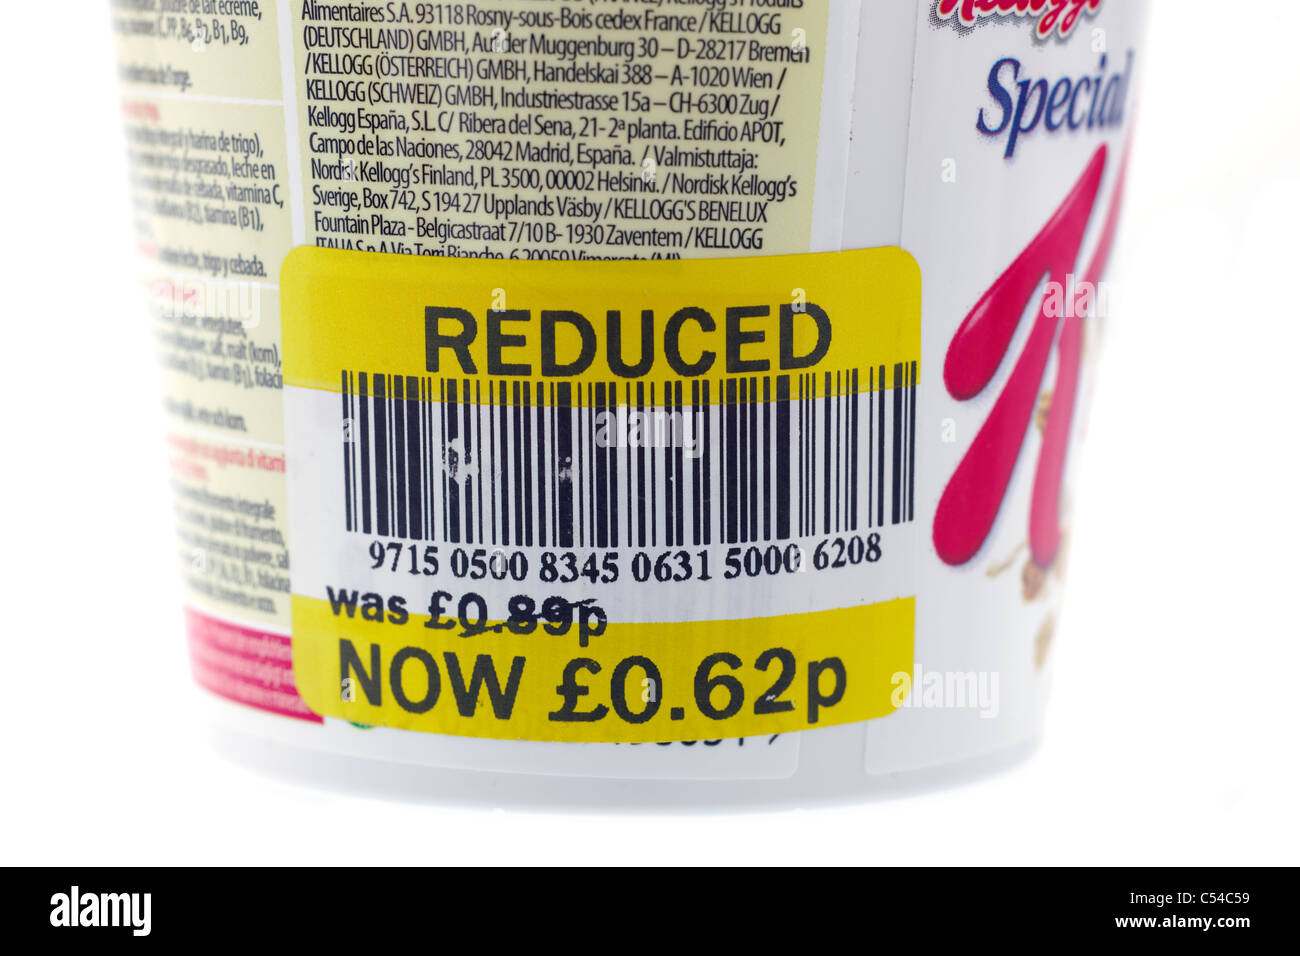 Réduction supermarché label donnant un prix réduit à partir de 89 pence t0 62 pence. Seulement ÉDITORIALE Banque D'Images